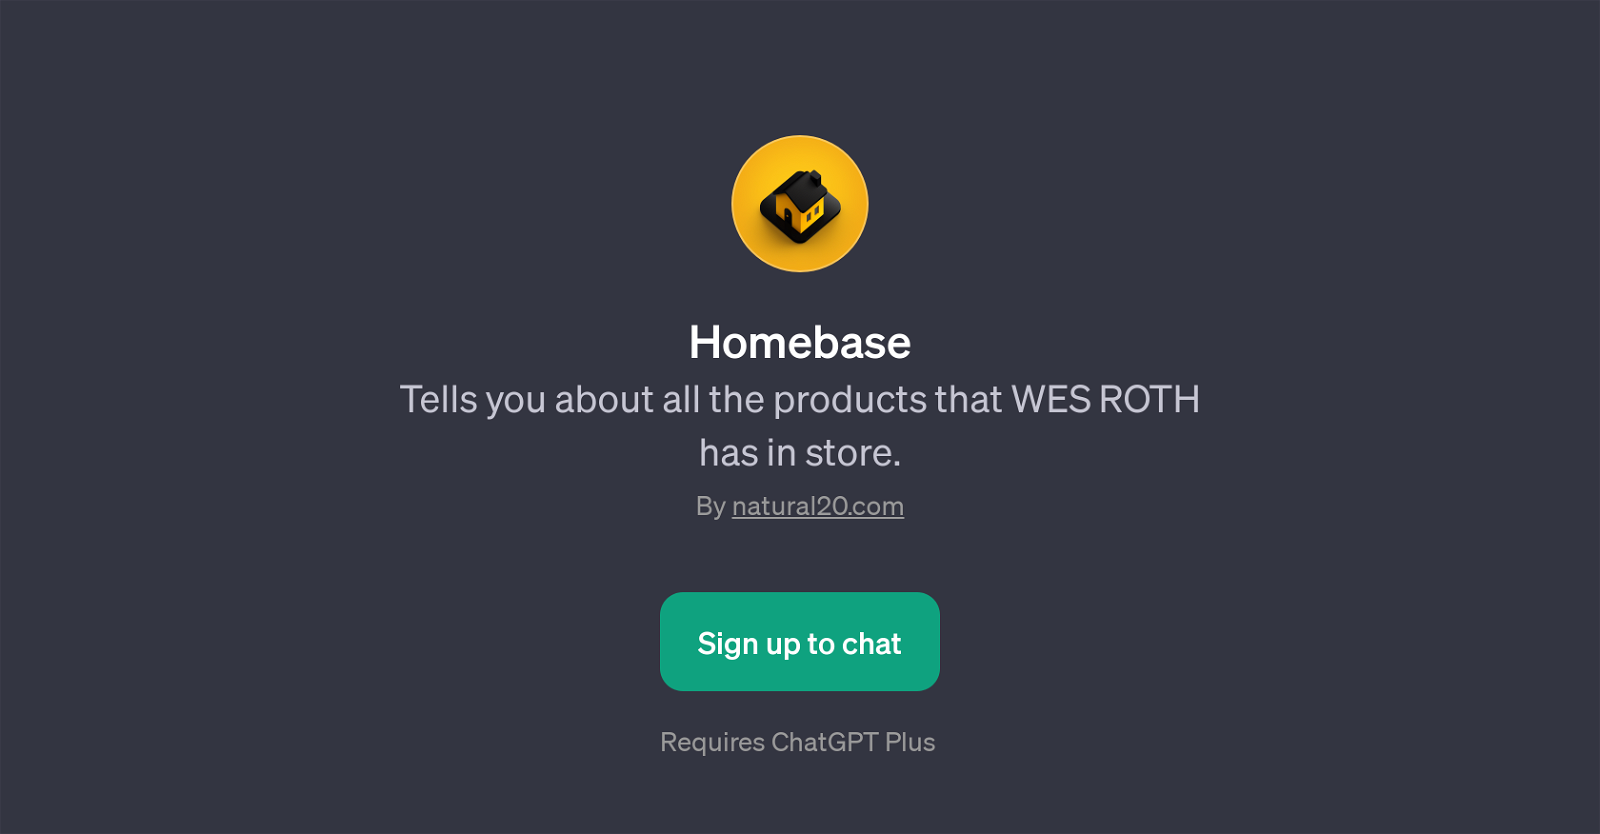 Homebase website